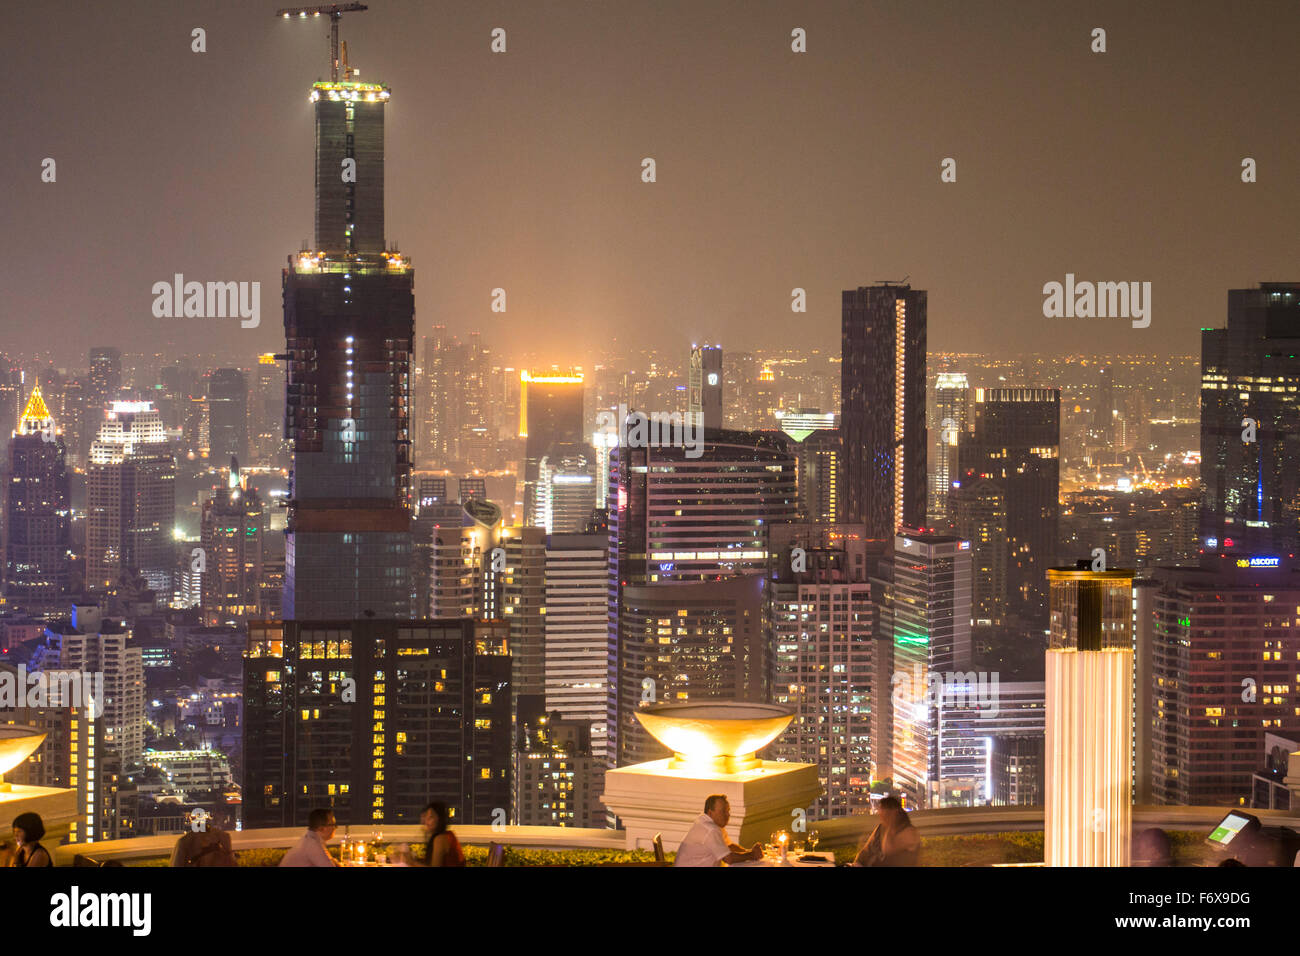 Sirocco Skybar in Bangkok at night Stock Photo